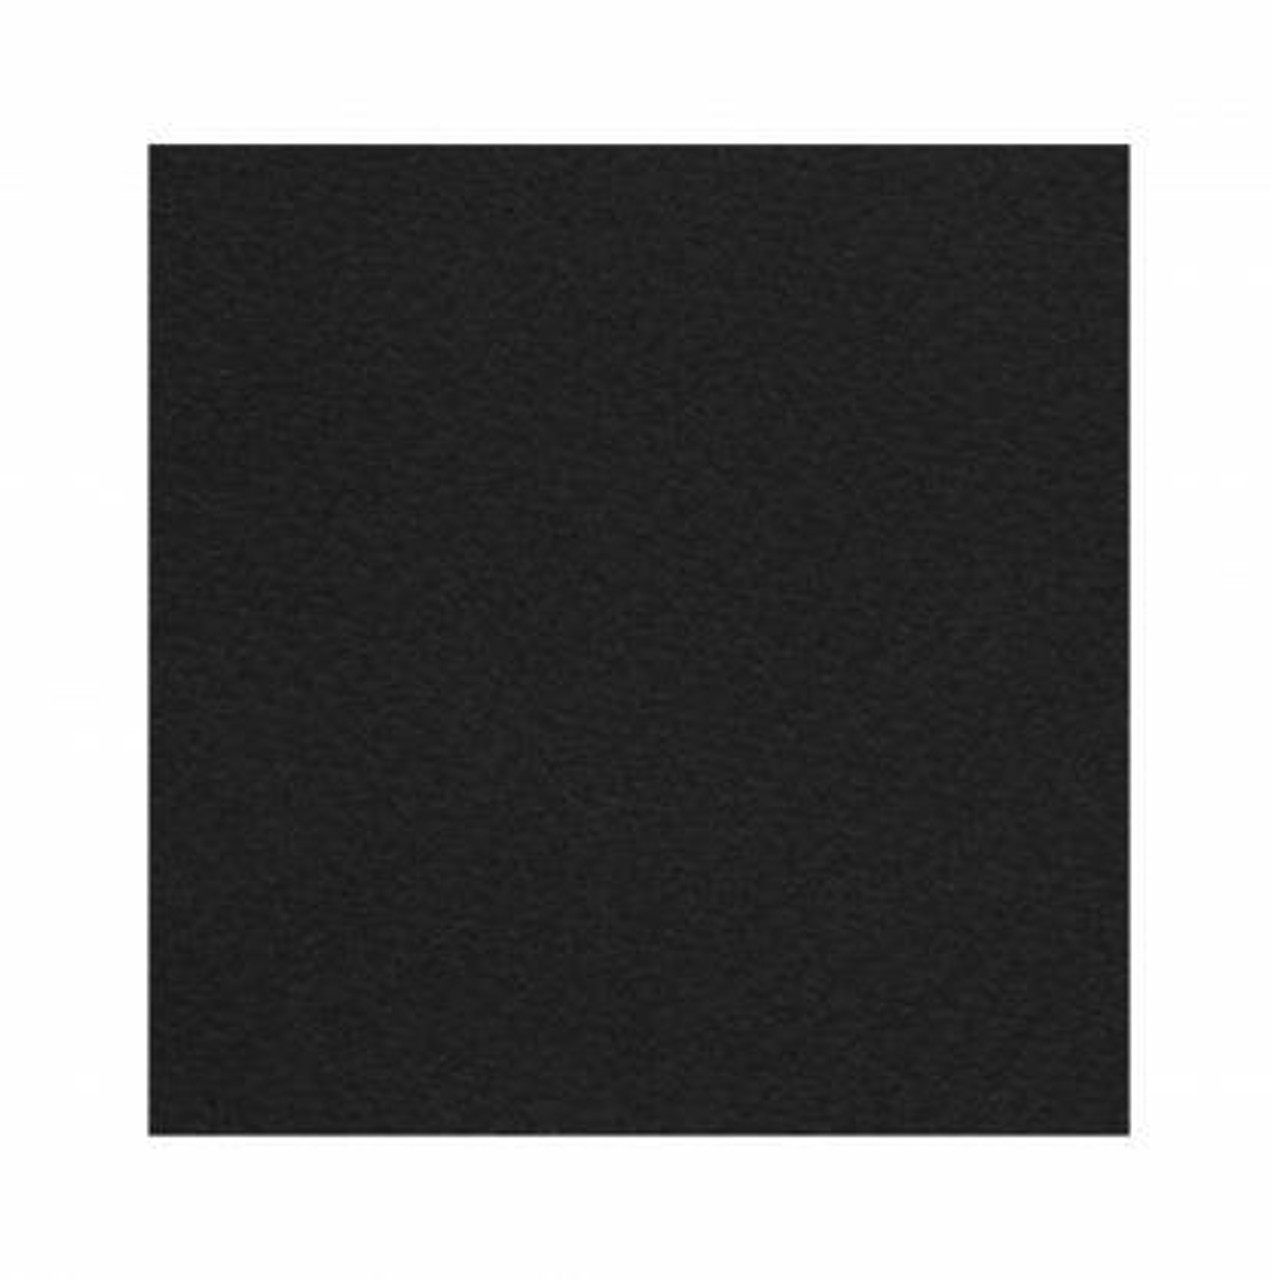 Rembrandt Black Watercolor Paper Block - A4 - Sam Flax Atlanta